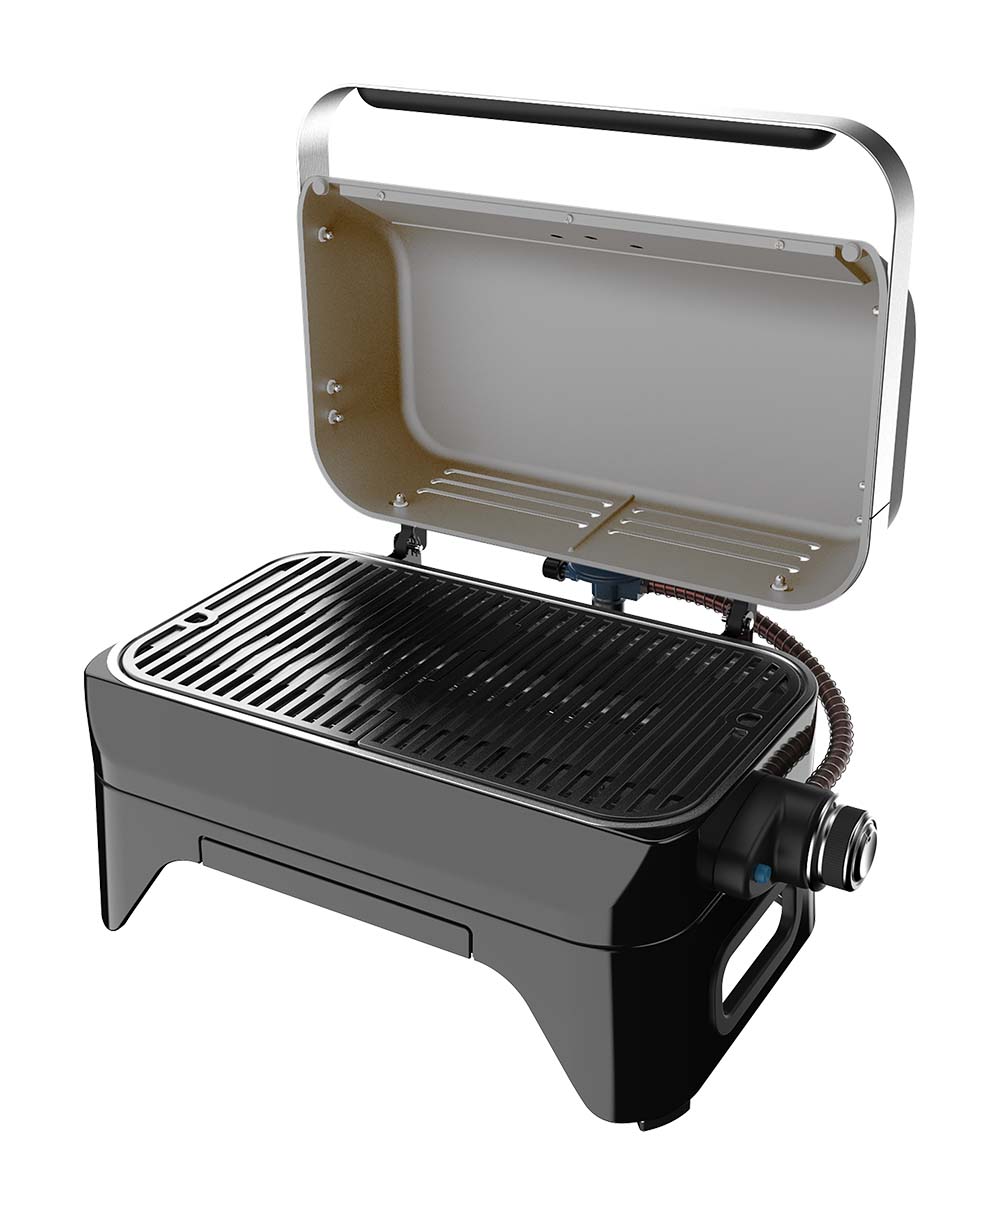 Campingaz - Tabletop Barbecue - Attitude - 2go - CV detail 6